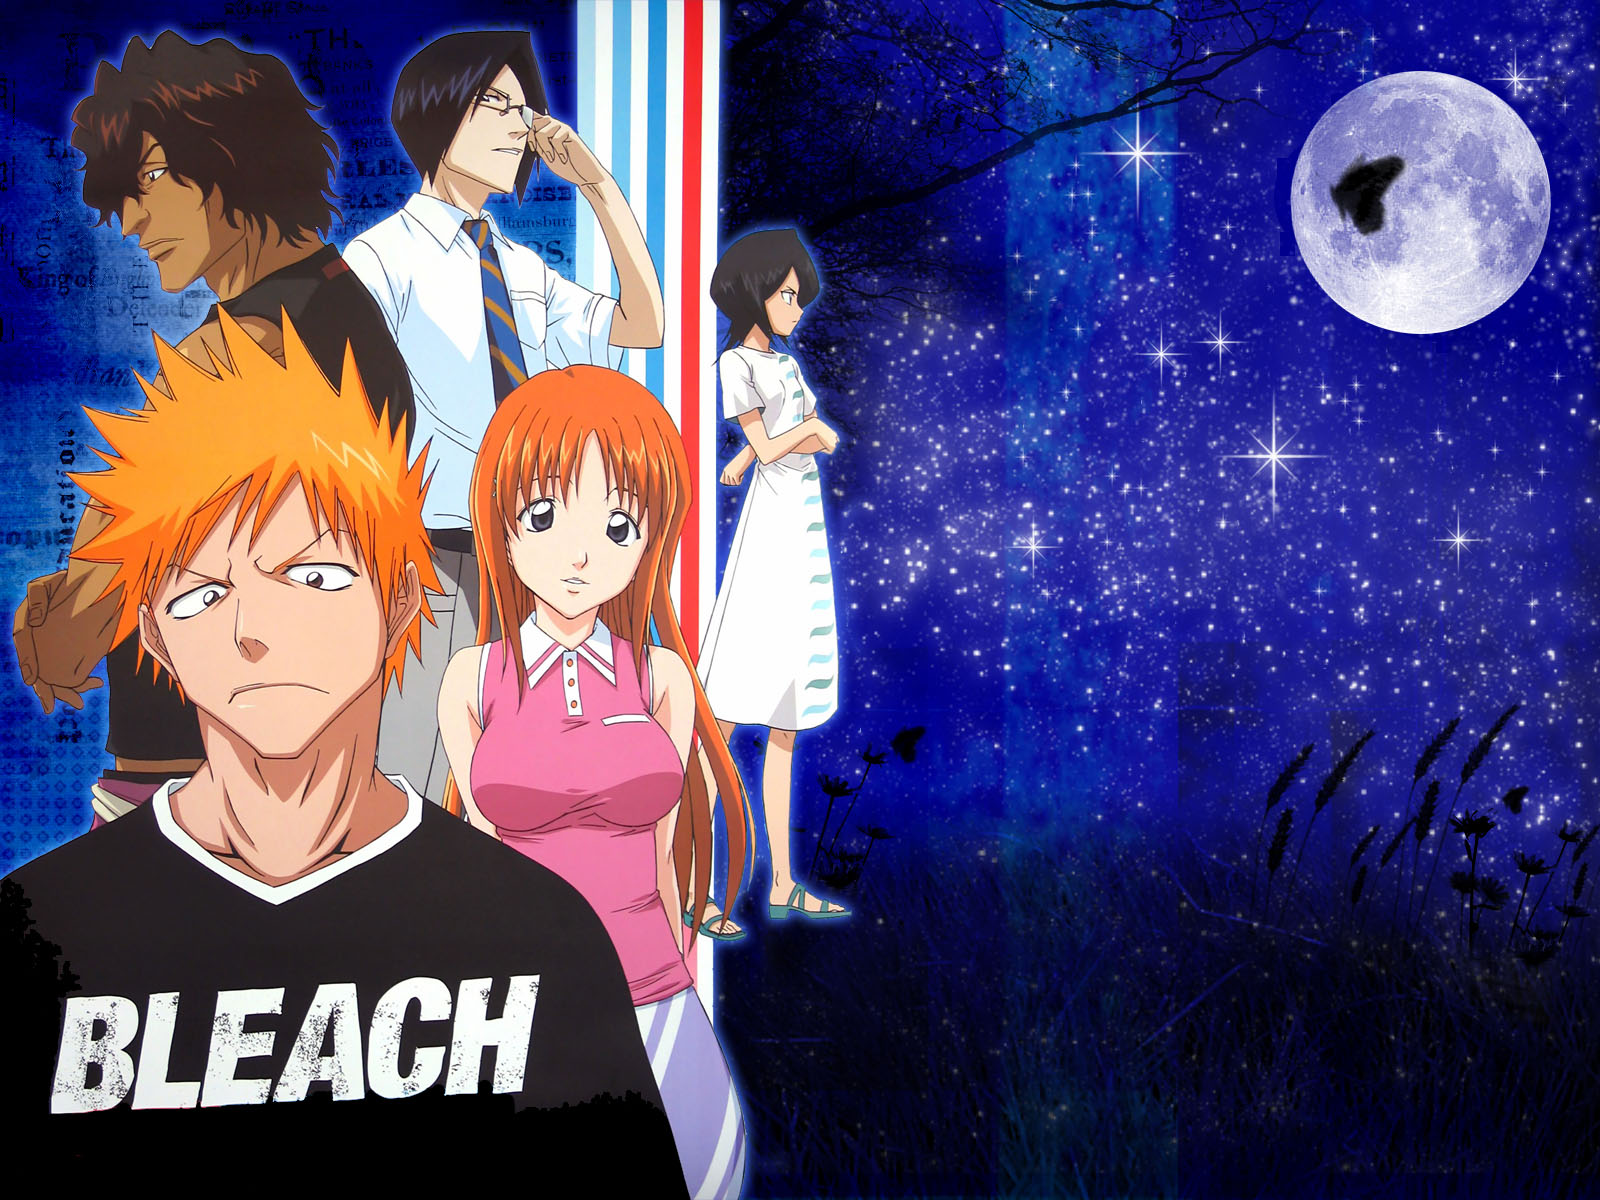 Descarga gratuita de fondo de pantalla para móvil de Animado, Rukia Kuchiki, Bleach: Burîchi, Ichigo Kurosaki, Orihime Inoue, Uryu Ishida, Yasutora Sado.